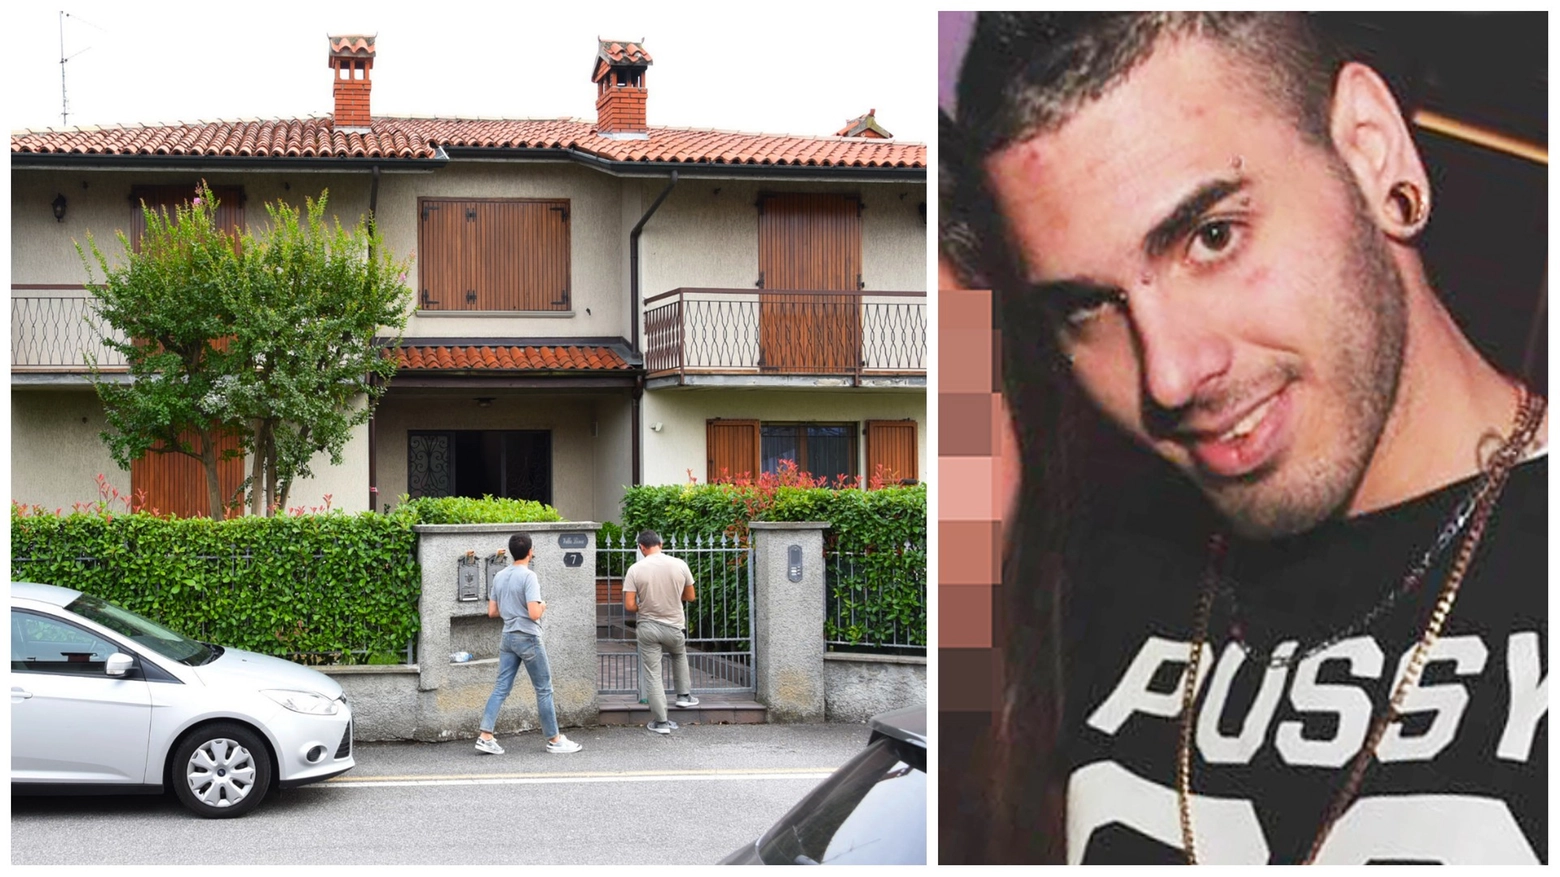 La villa del delitto, a Cavernago. A destra Federico Gaibotti, 30 anni, accusato dell'omicidio del padre